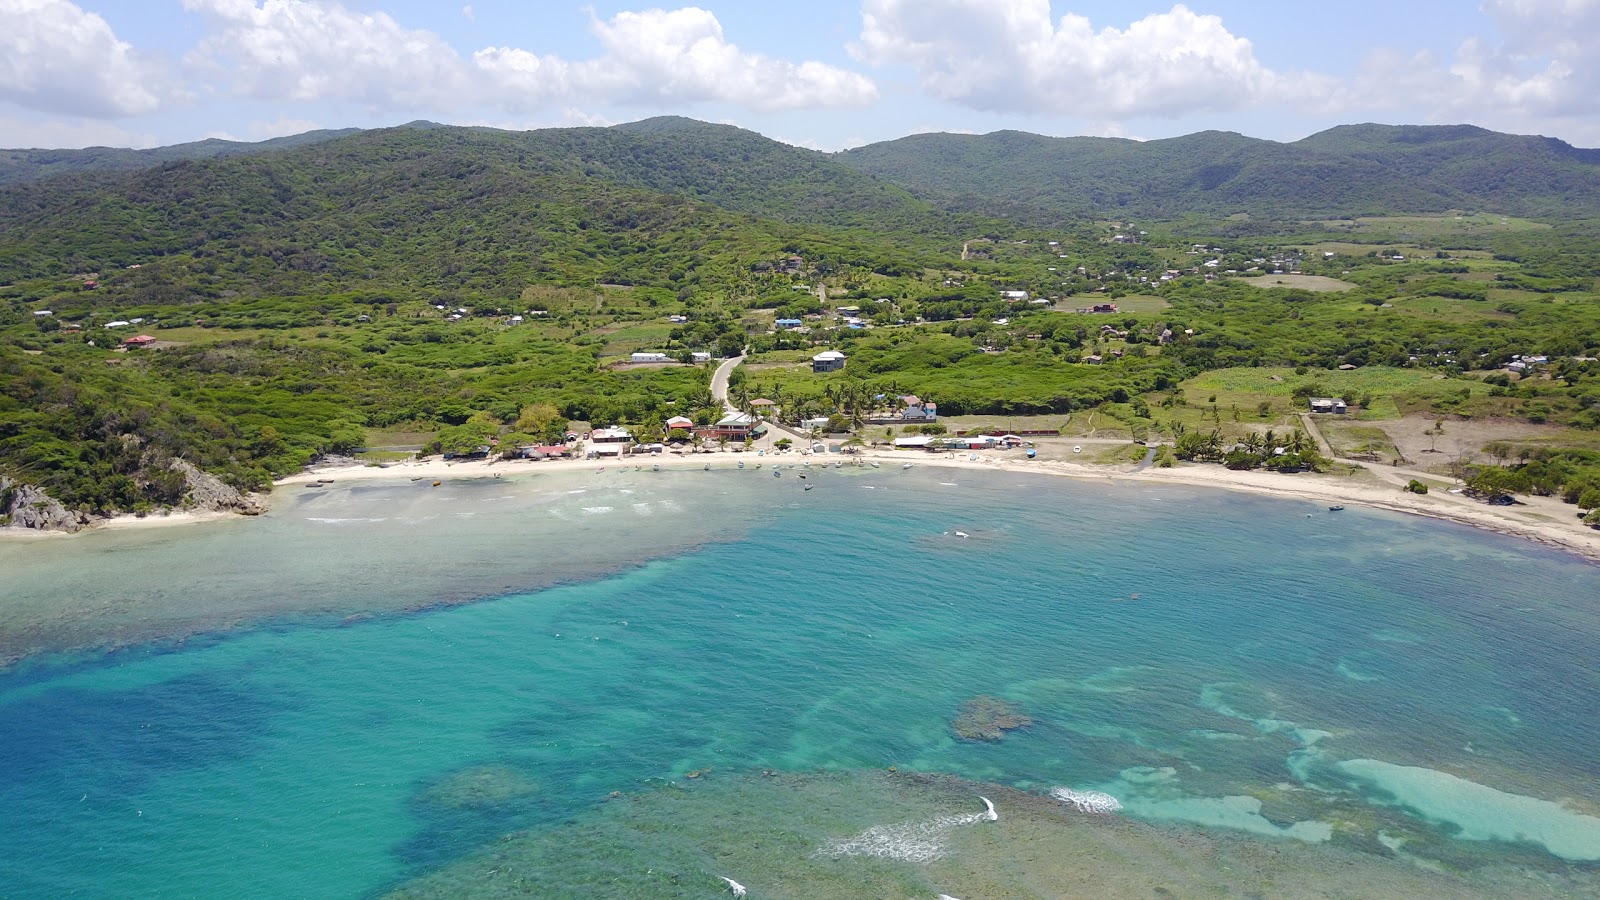 Photo de Playa Buen Hombre - endroit populaire parmi les connaisseurs de la détente